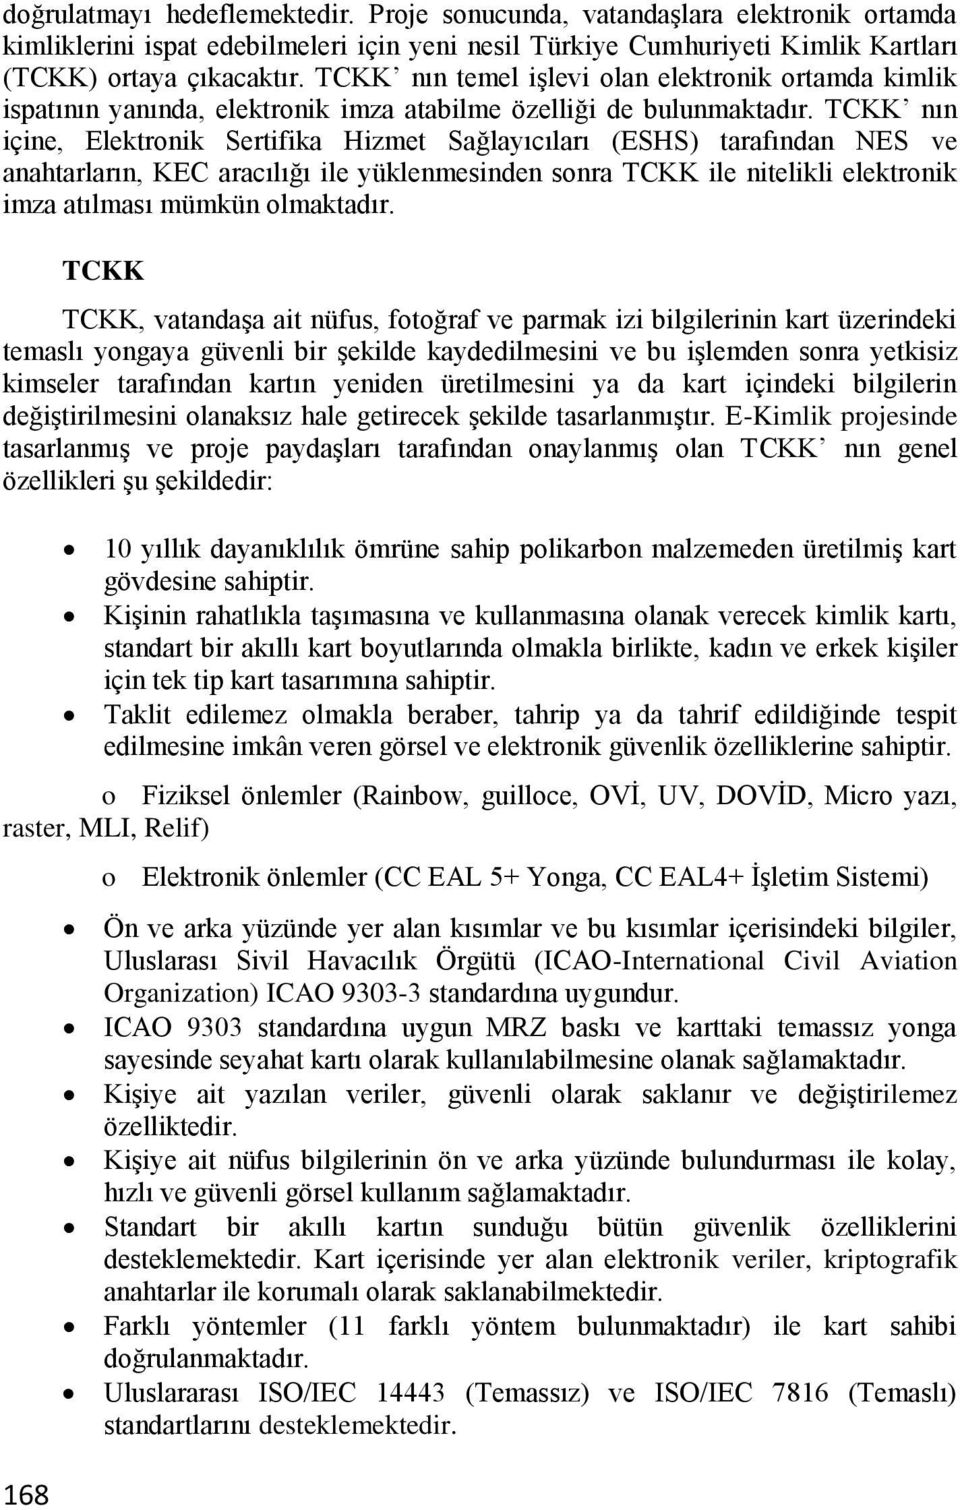 TCKK nın içine, Elektronik Sertifika Hizmet Sağlayıcıları (ESHS) tarafından NES ve anahtarların, KEC aracılığı ile yüklenmesinden sonra TCKK ile nitelikli elektronik imza atılması mümkün olmaktadır.